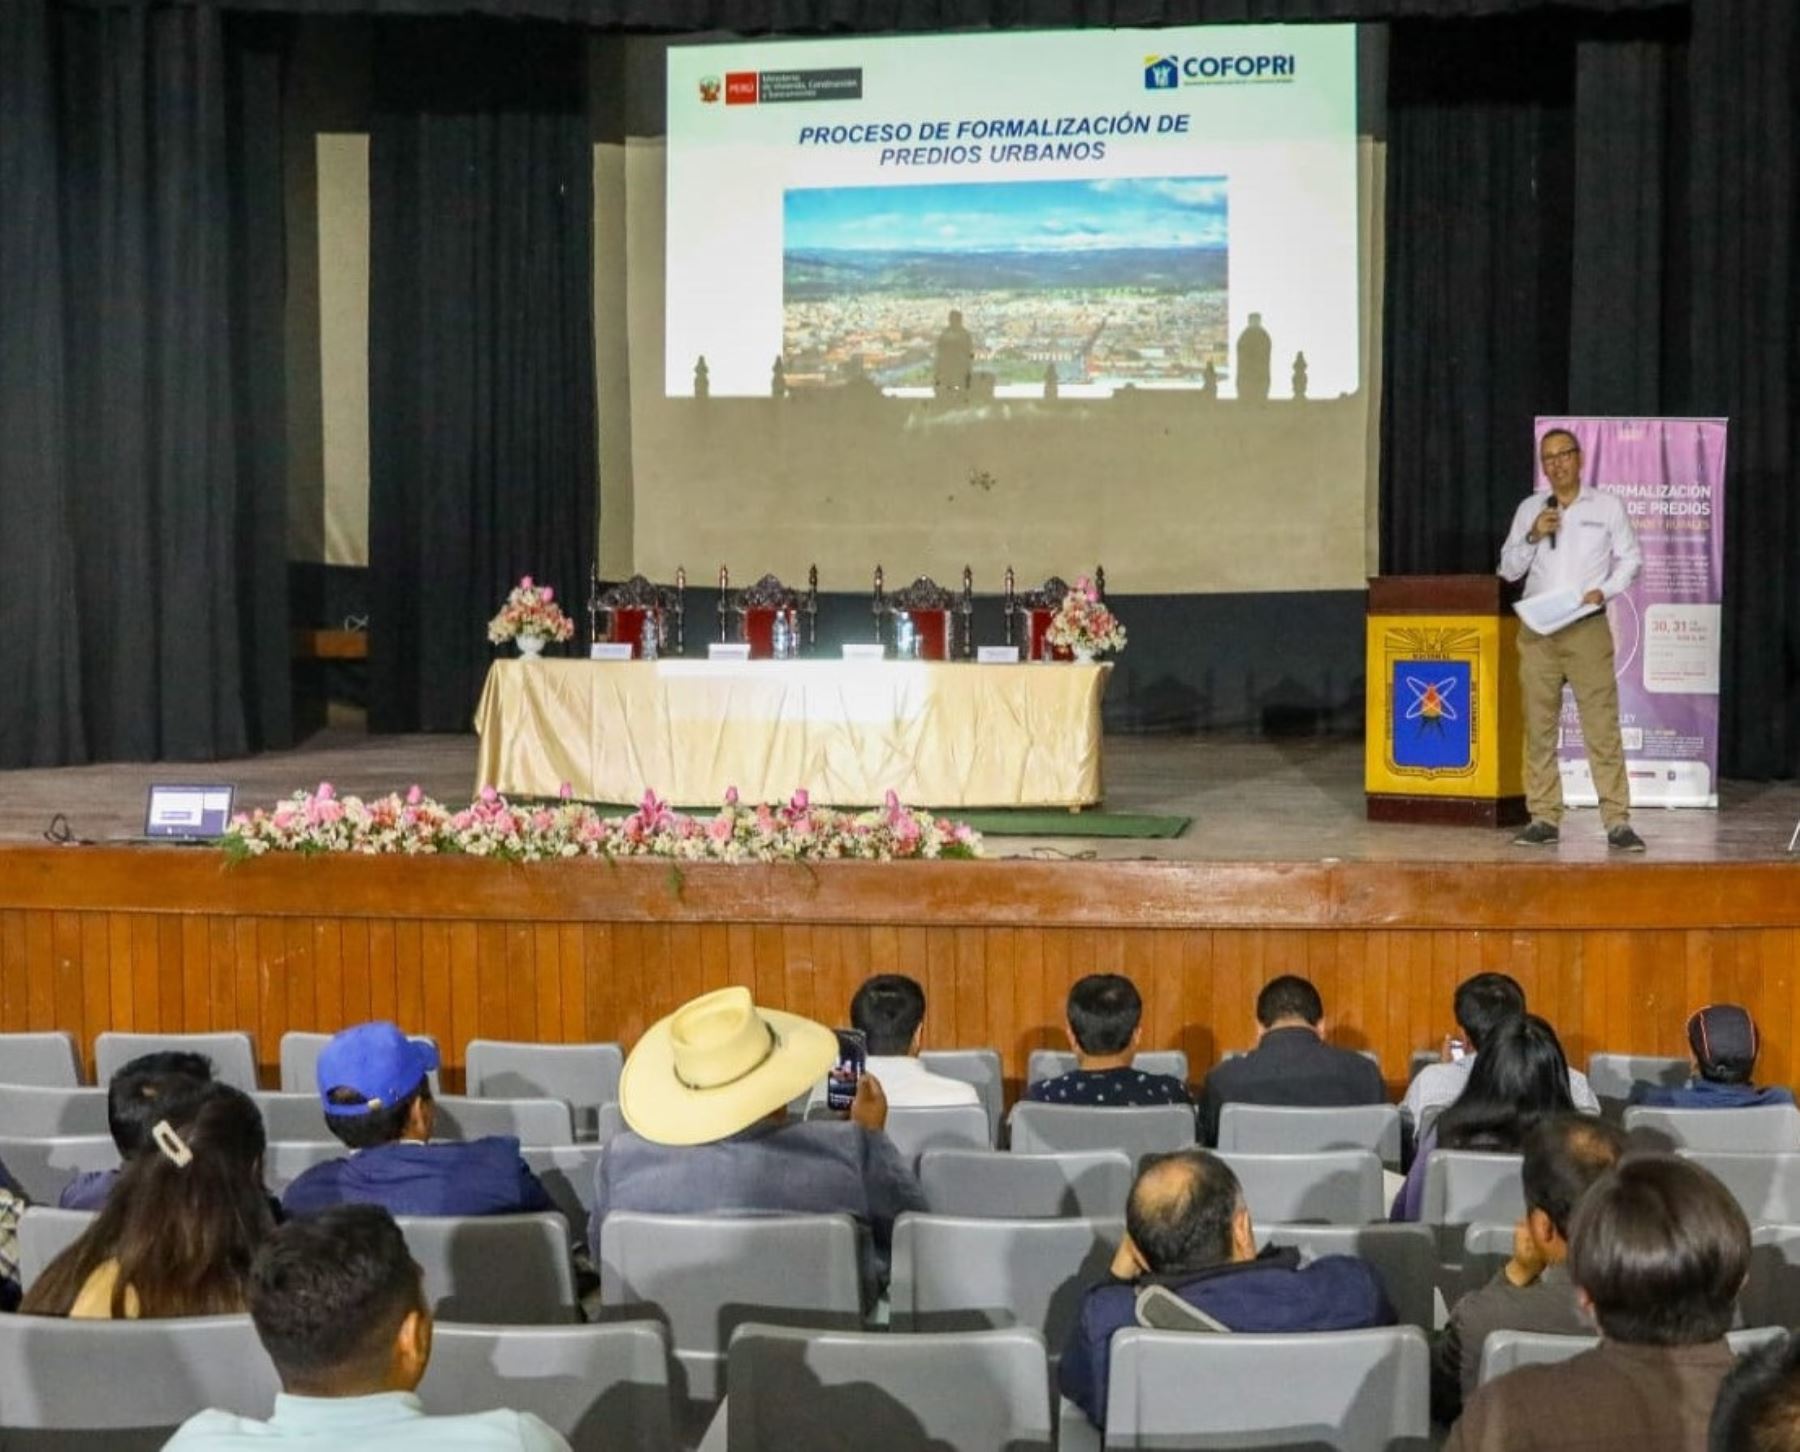 Cofopri informa de ventajas de formalización predial en foro desarrollado en Cajamarca. ANDINA/Difusión